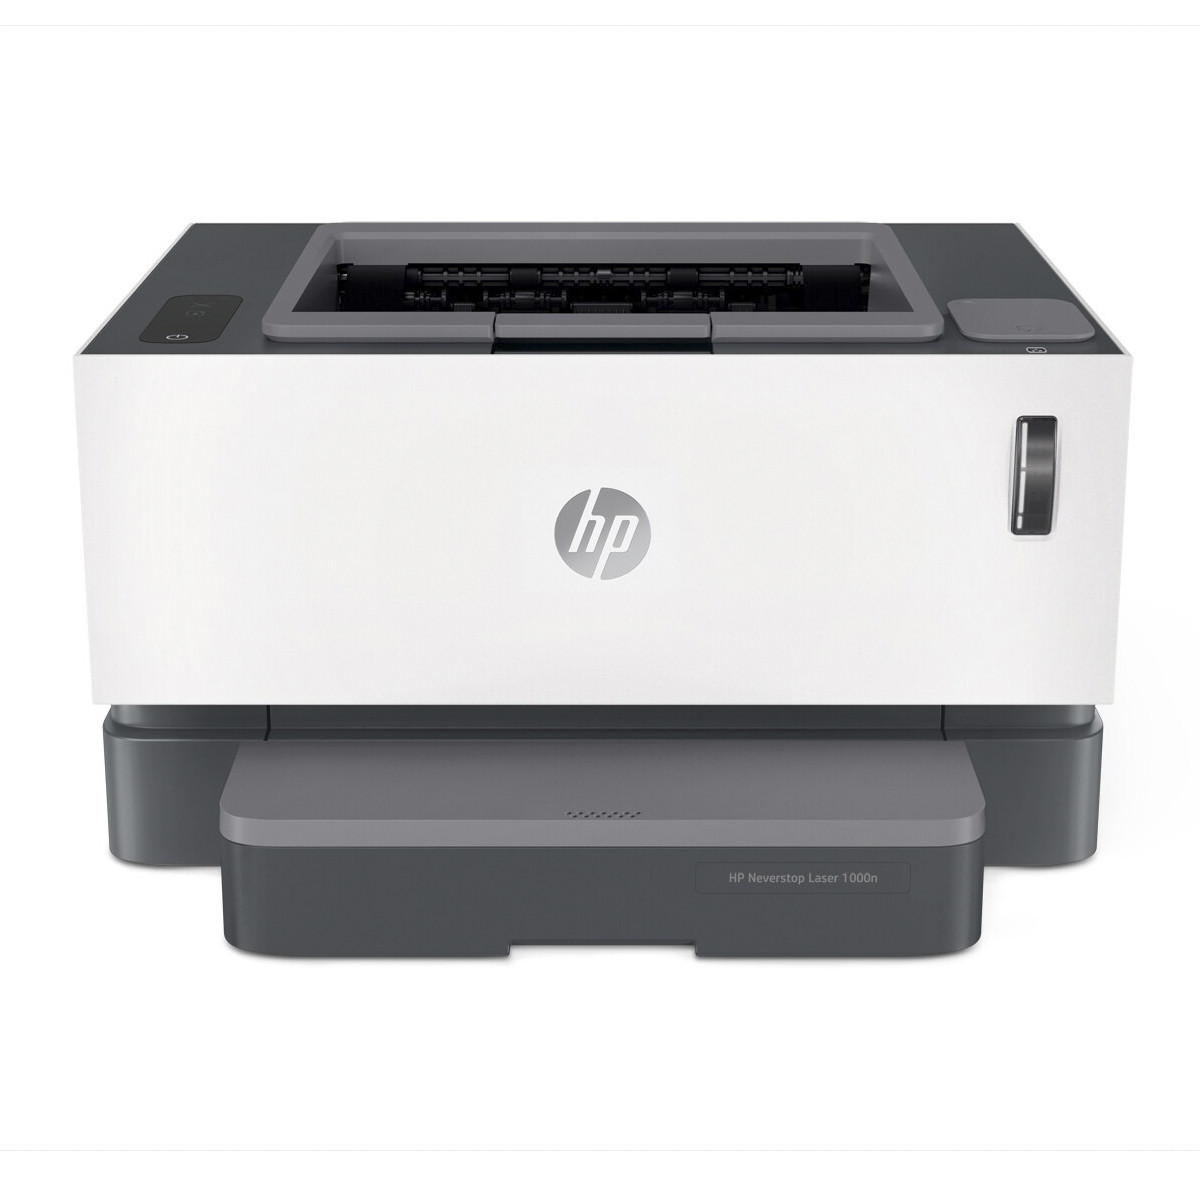 Impressora HP Neverstop 1000N 5HG74A com Conexão USB